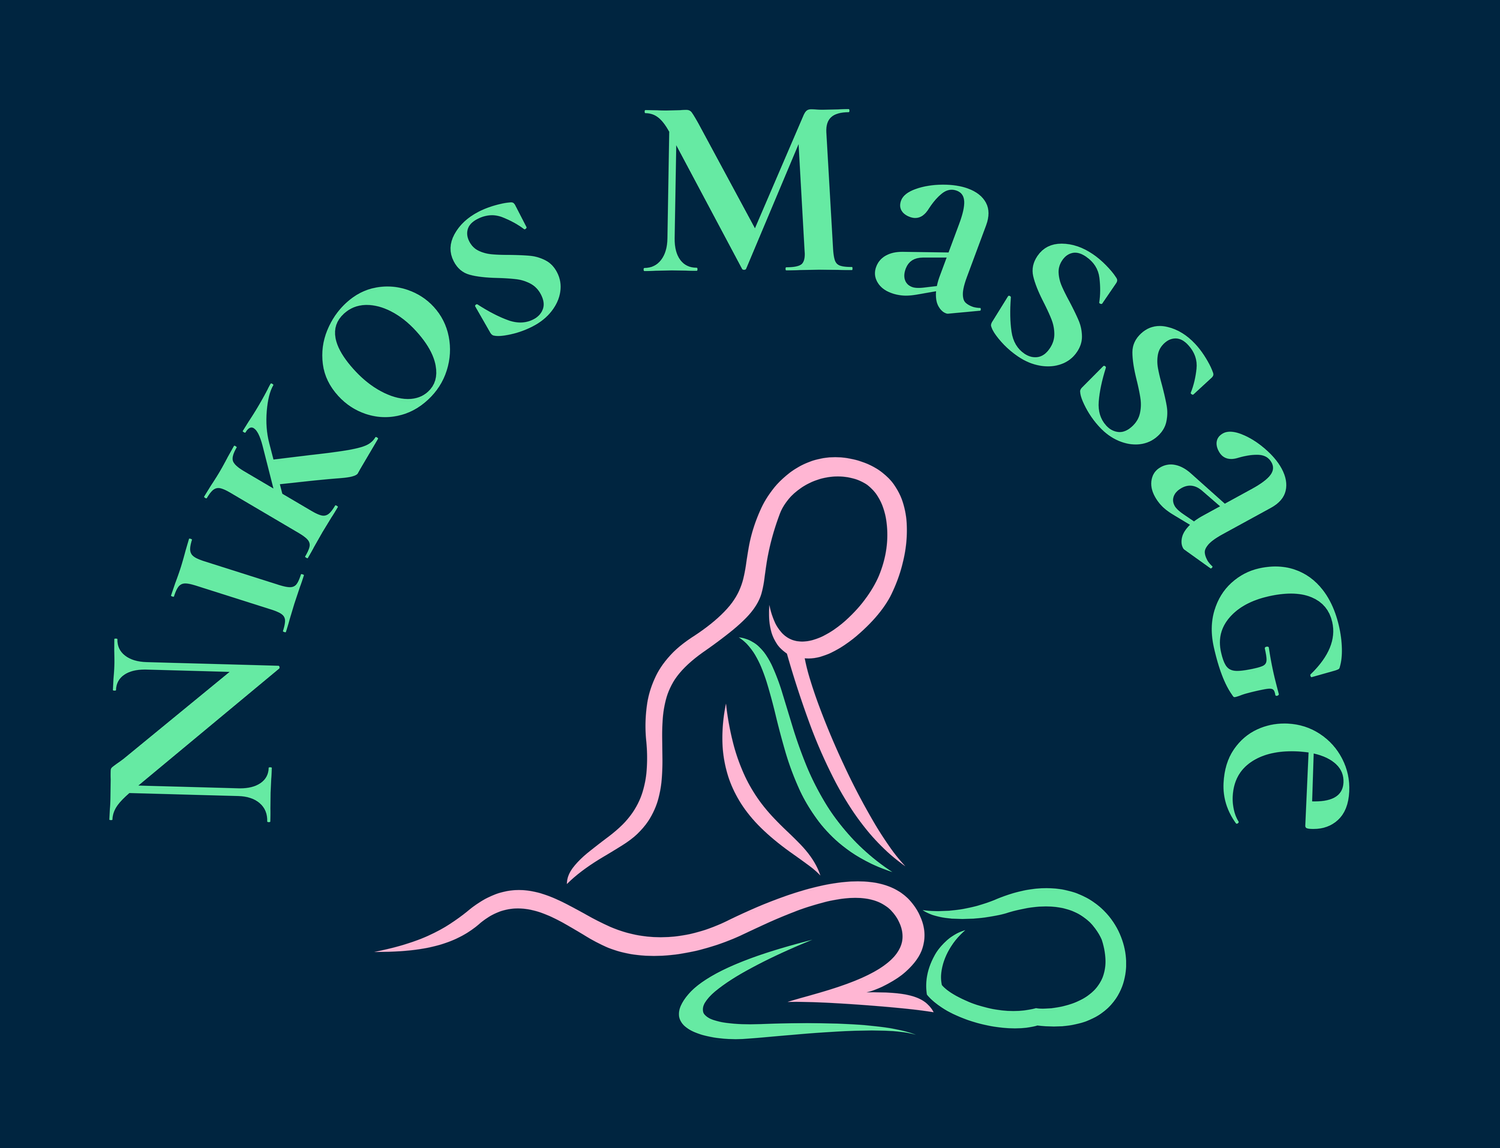 Nikos-Massage-logo.png